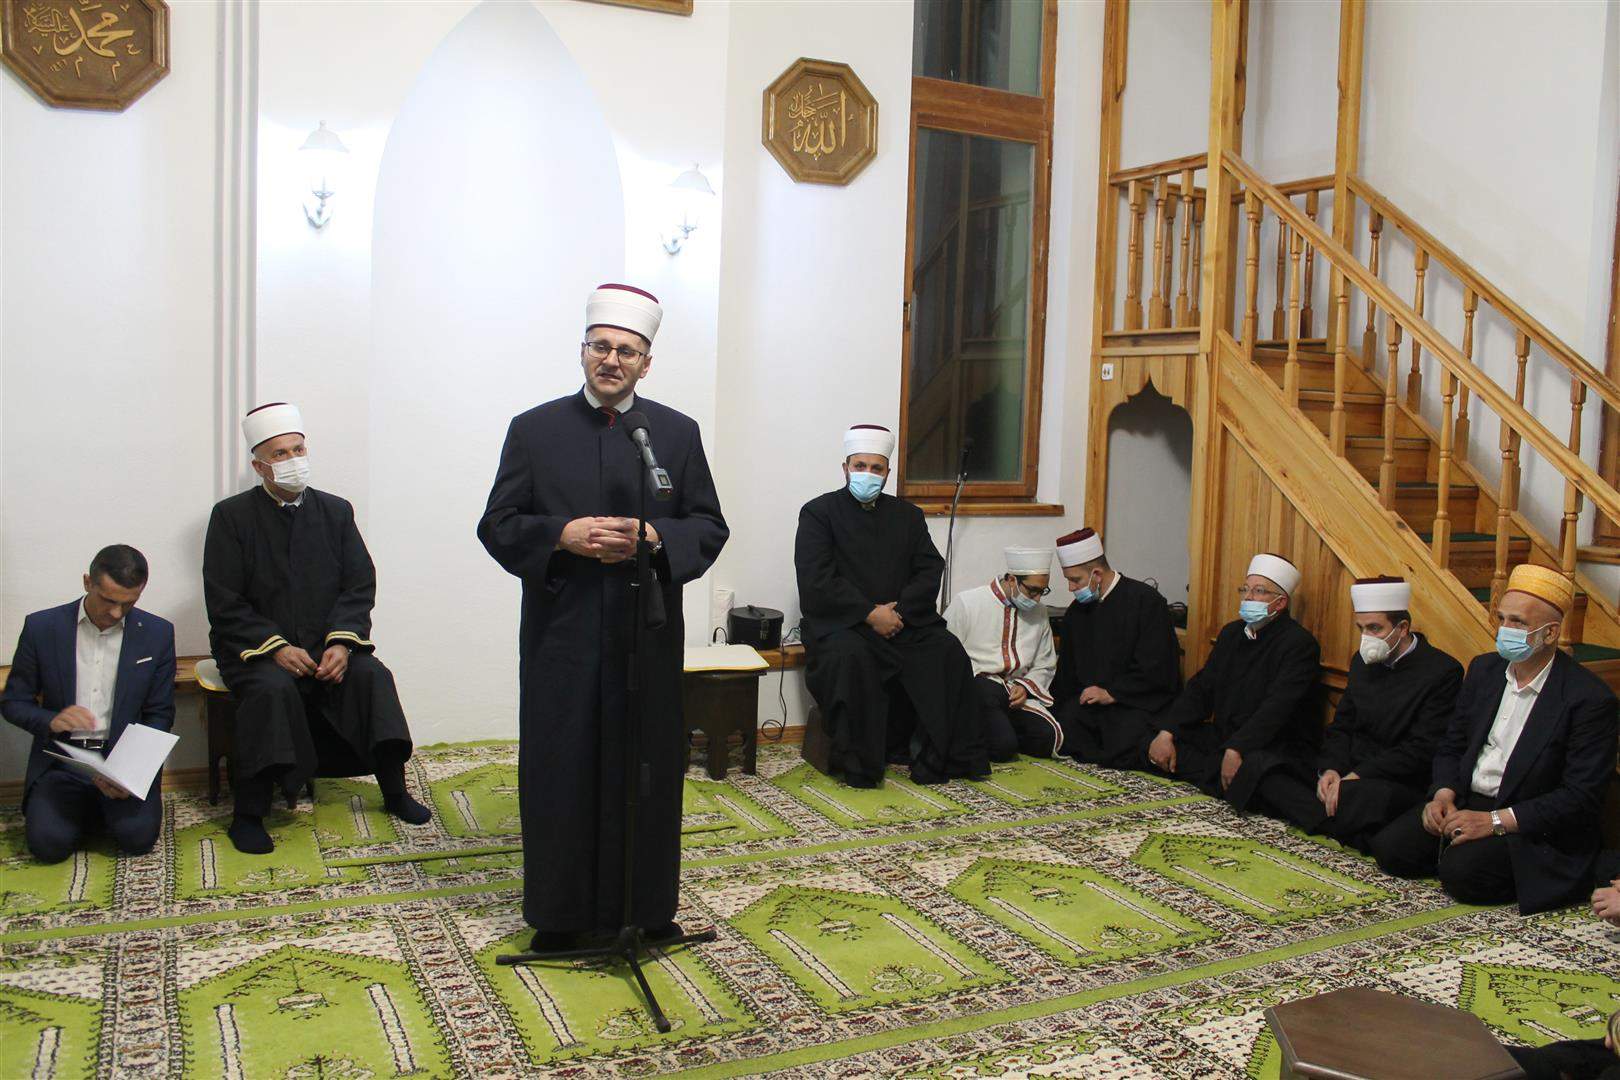 Video: Centralni program Islamske zajednice povodom Fetha Mekke održan u Gradskoj kod Ljubuškog